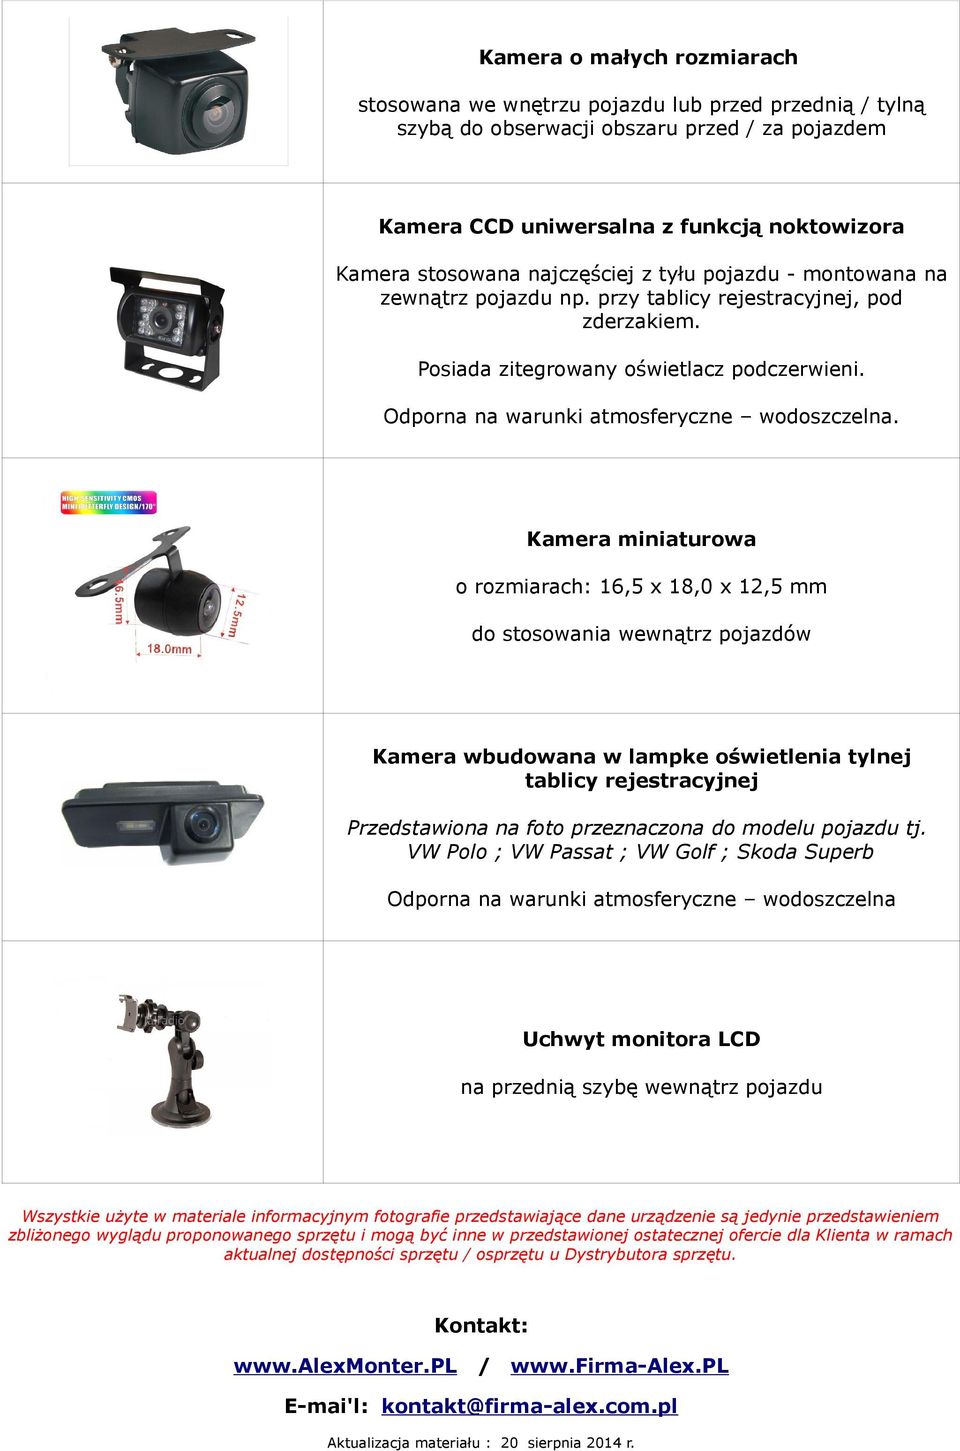 Kamera miniaturowa o rozmiarach: 16,5 x 18,0 x 12,5 mm do stosowania wewnątrz pojazdów Kamera wbudowana w lampke oświetlenia tylnej tablicy rejestracyjnej Przedstawiona na foto przeznaczona do modelu